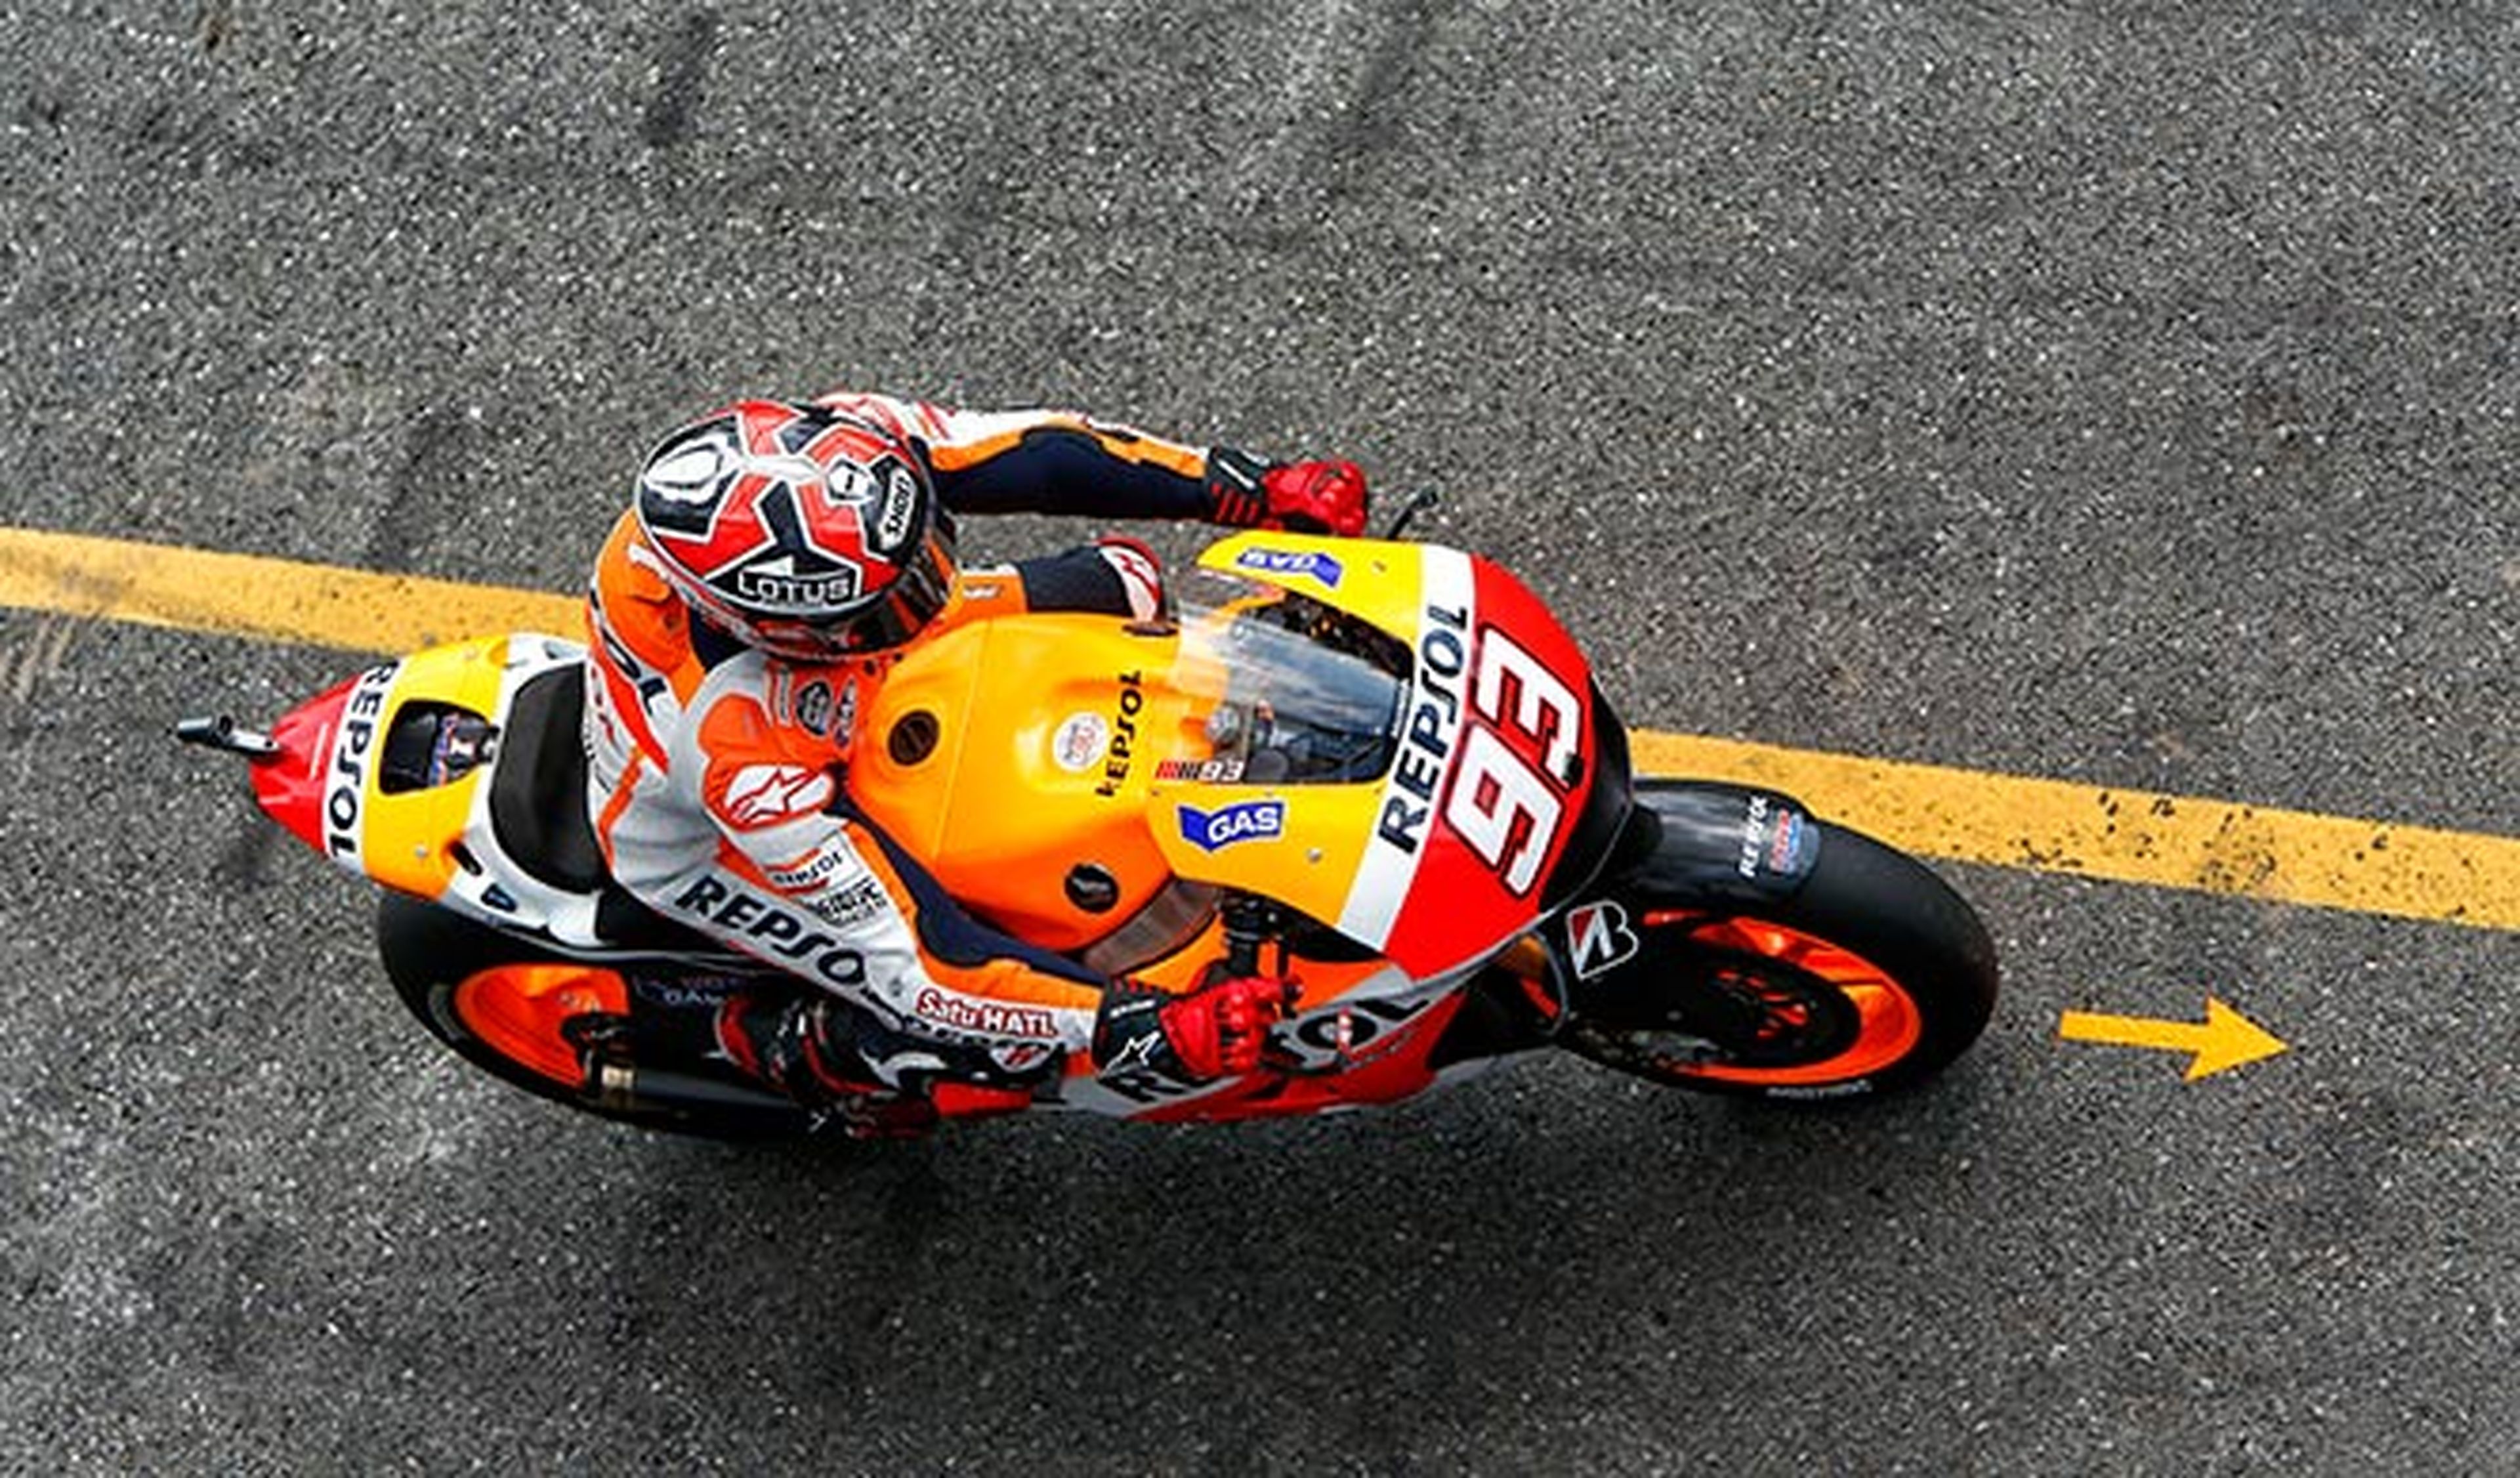 Novena pole de Márquez en el MotoGP República Checa 2014